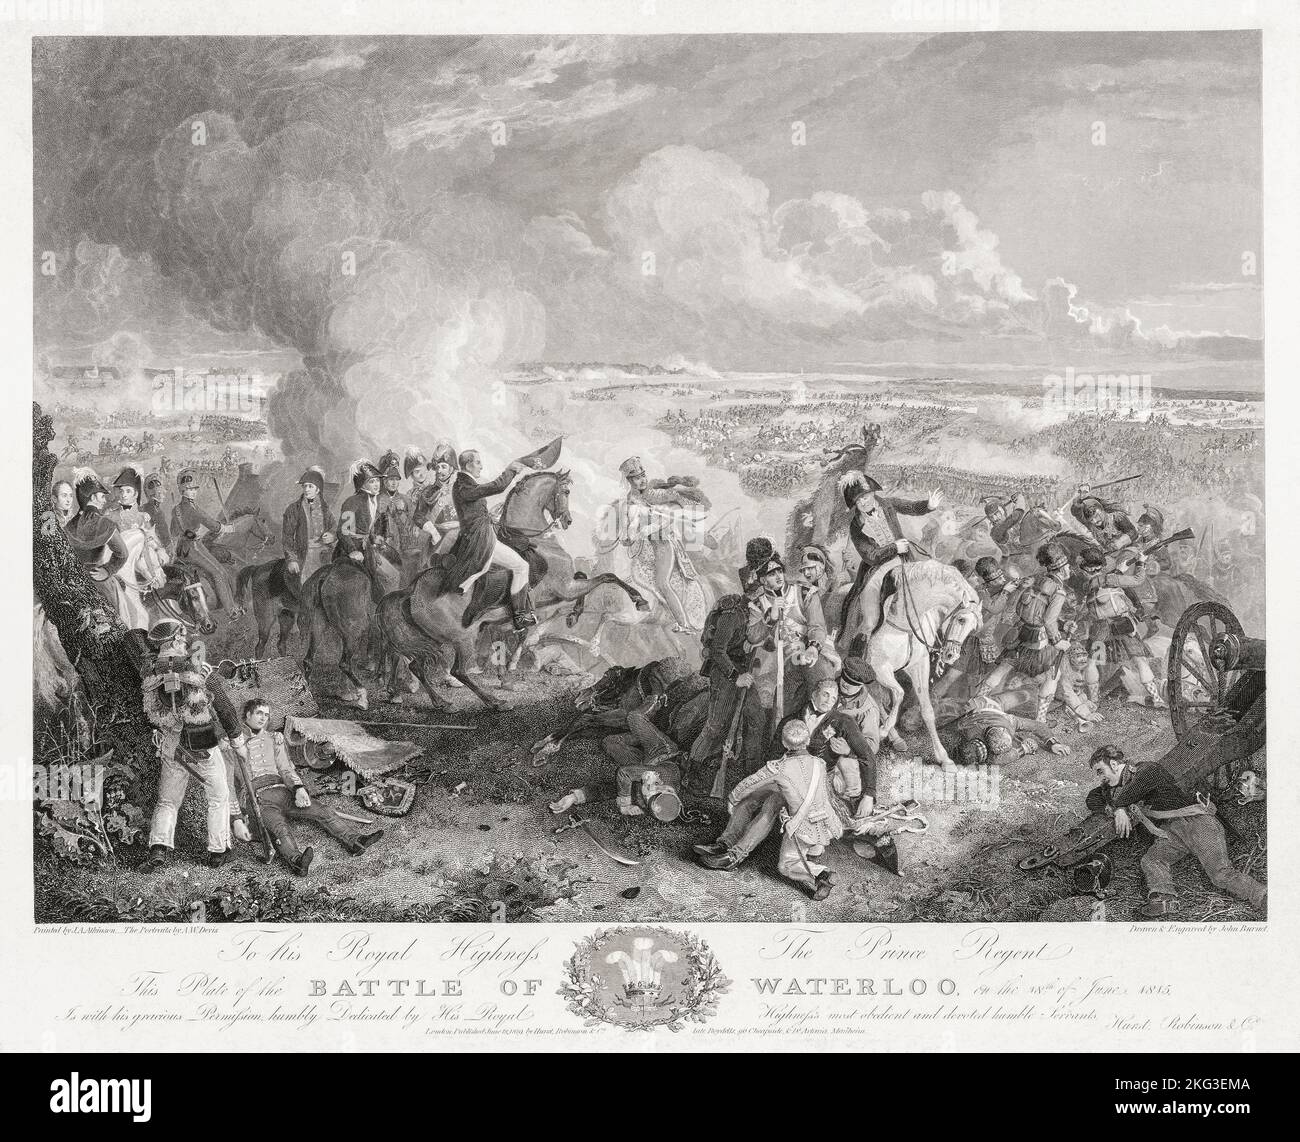 Die Schlacht von Waterloo, 18. Juni 1815. Der Herzog von Wellington zu Pferd mit dem Hut in der Hand, in der Mitte, hat die Nachricht erhalten, dass Feldmarschall von Blucher und seine preußischen Truppen auf dem Weg zur Schlacht sind. Nach einem Druck aus dem 19.. Jahrhundert von John Burnett. Stockfoto